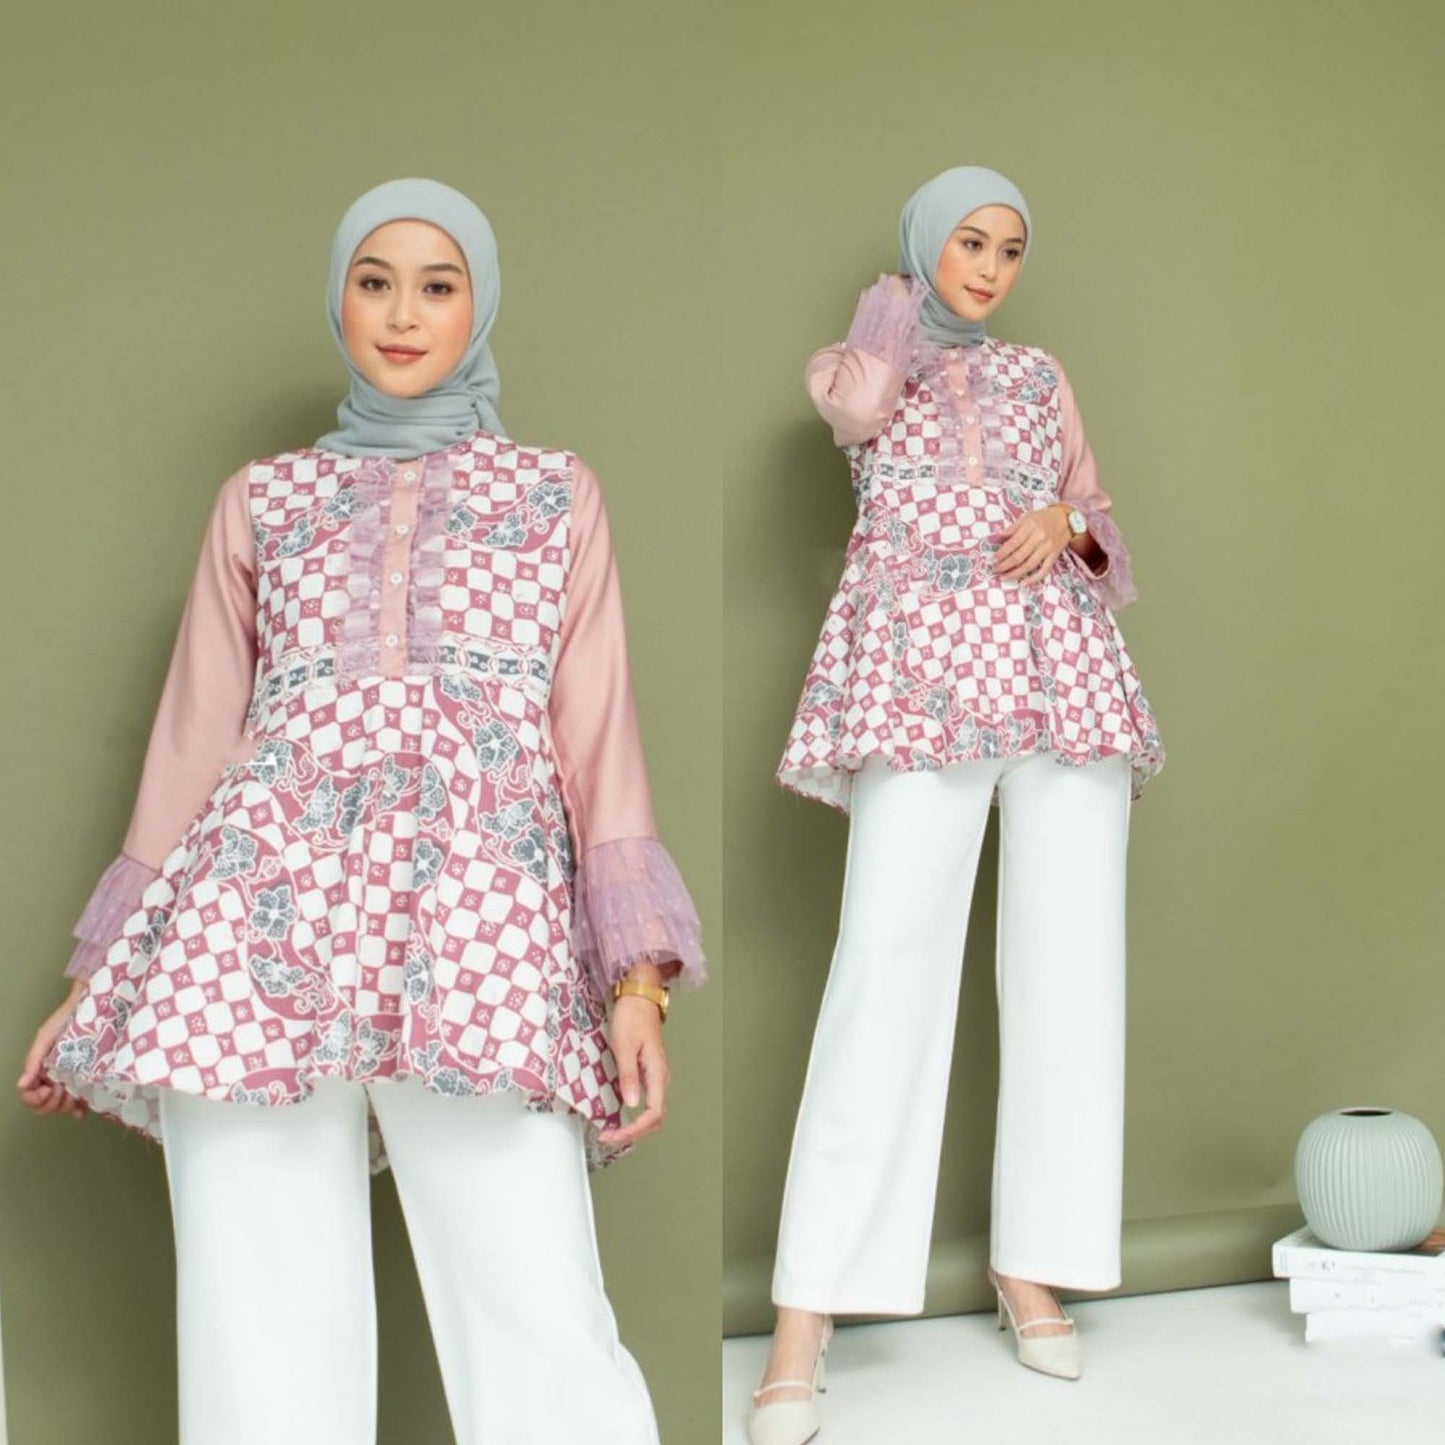 Feminine Sophistication: Batik Wanita for Office Elegance, Women Blouse, Batik Blouse, Blouse For Women, Ethnic Dress, Women Formal Shirt